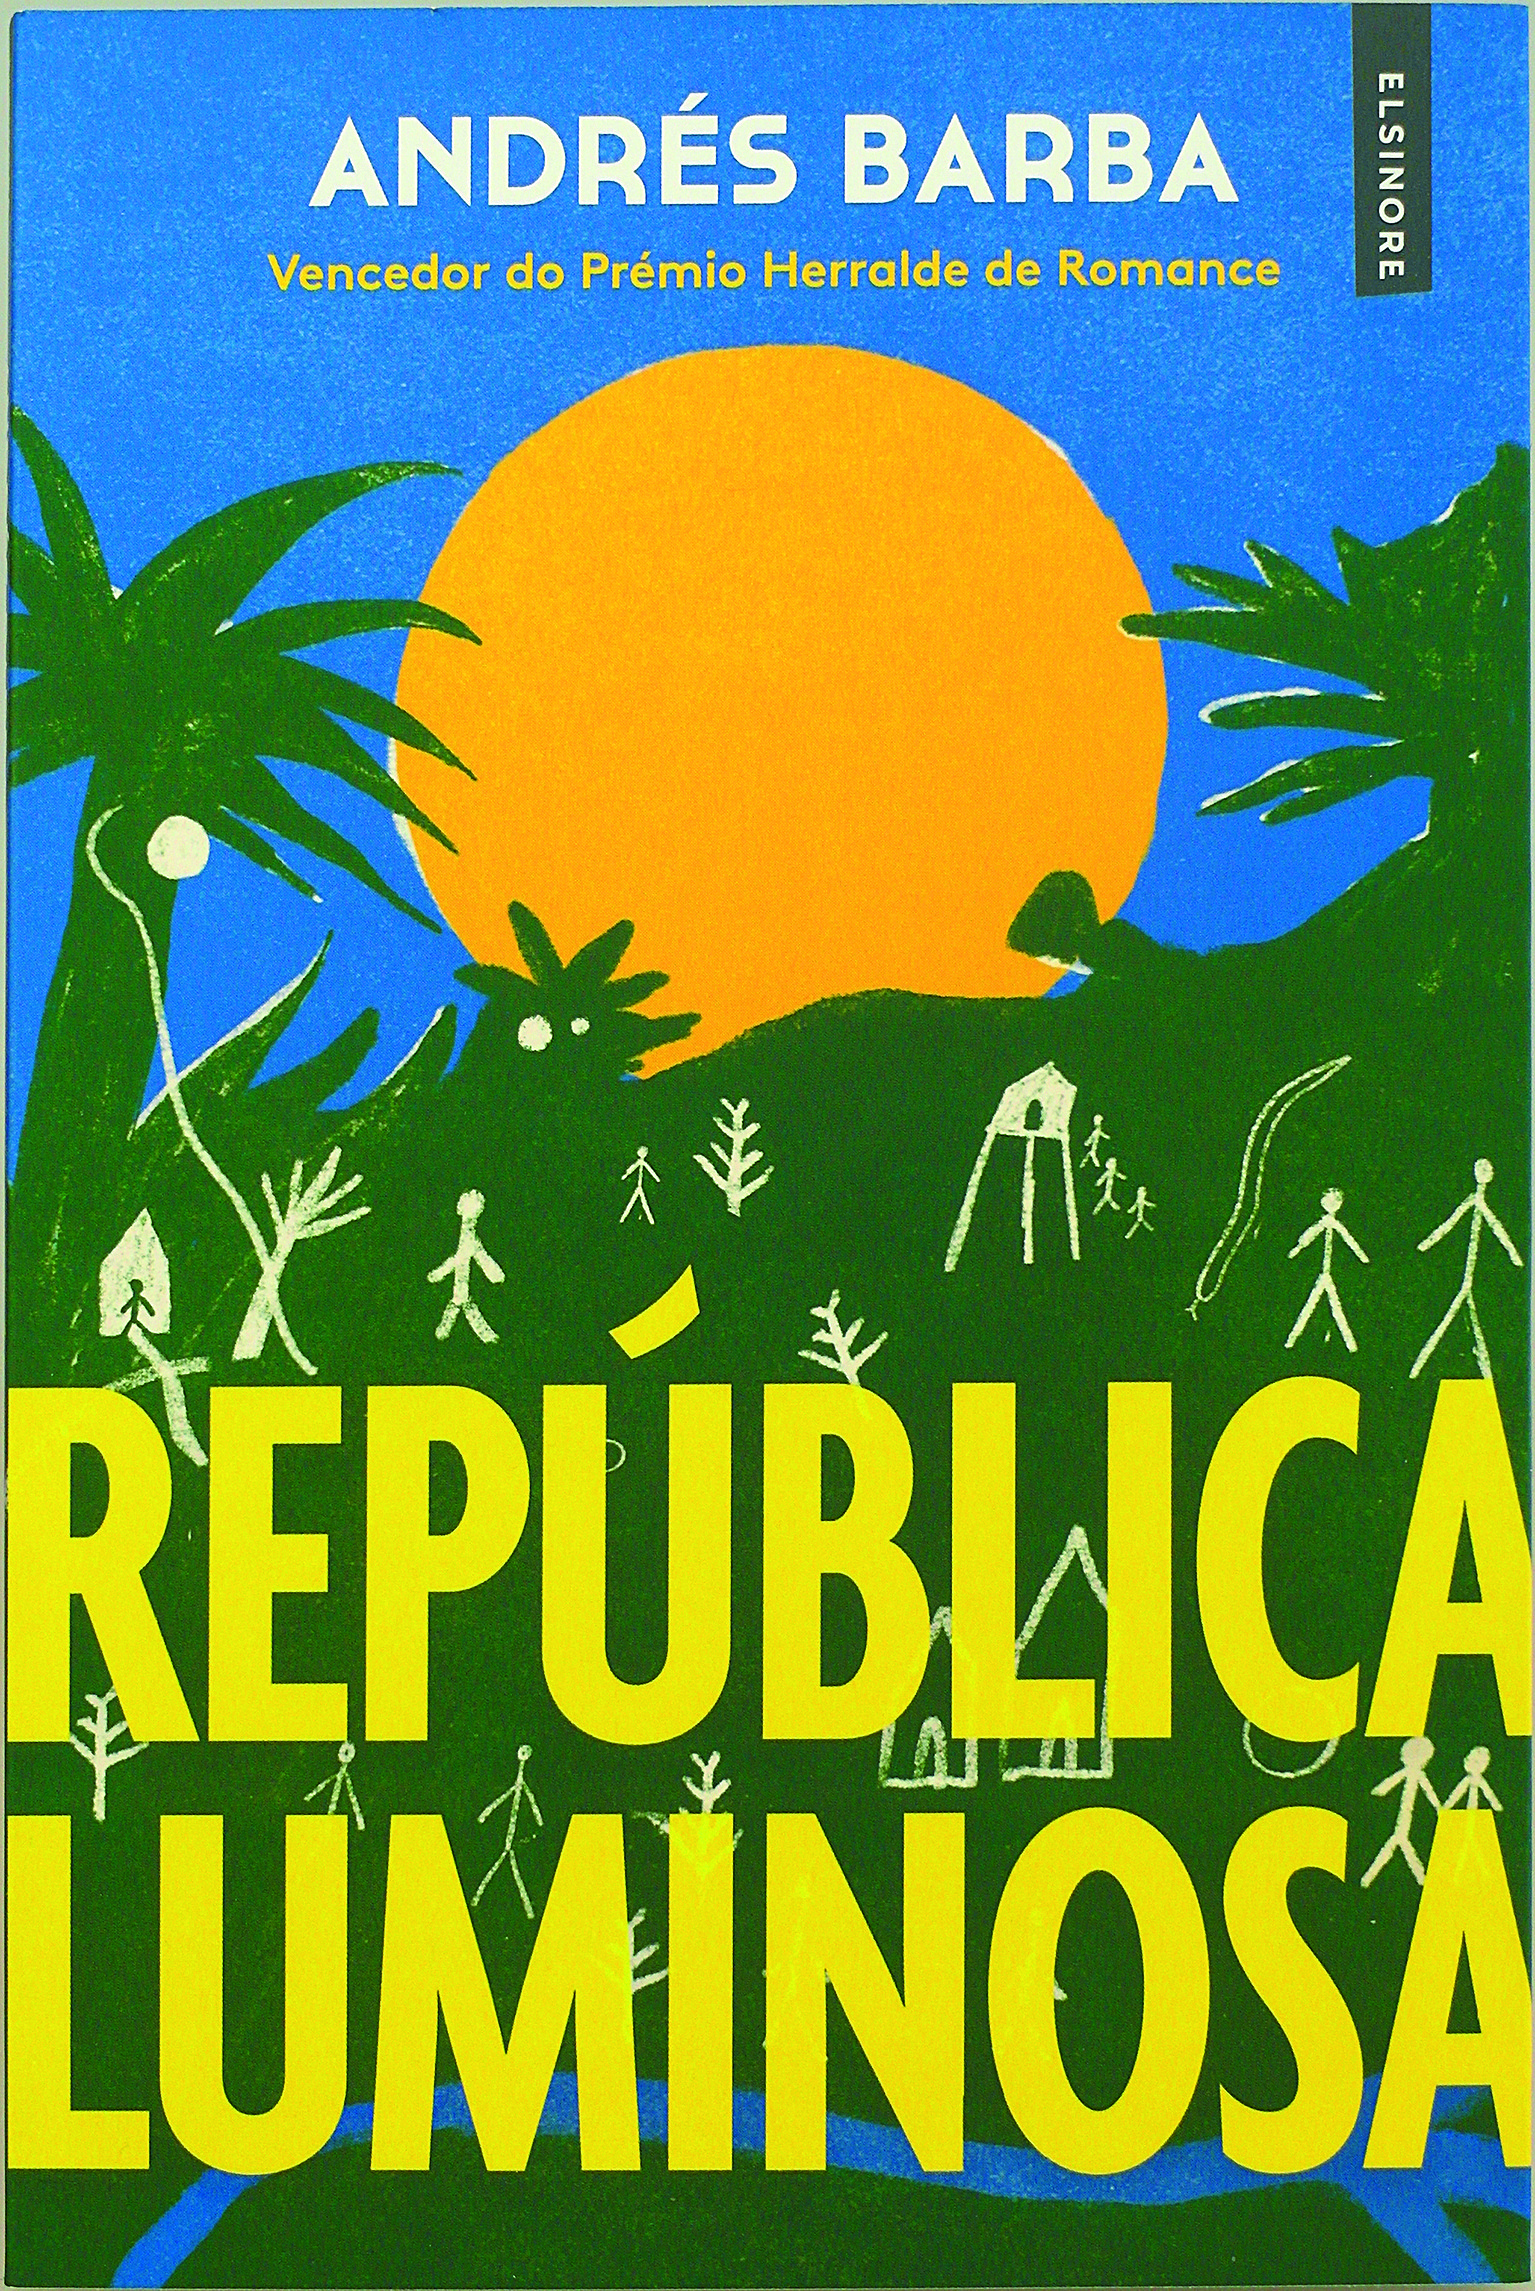 capa do livro republica luminosa 2.jpg